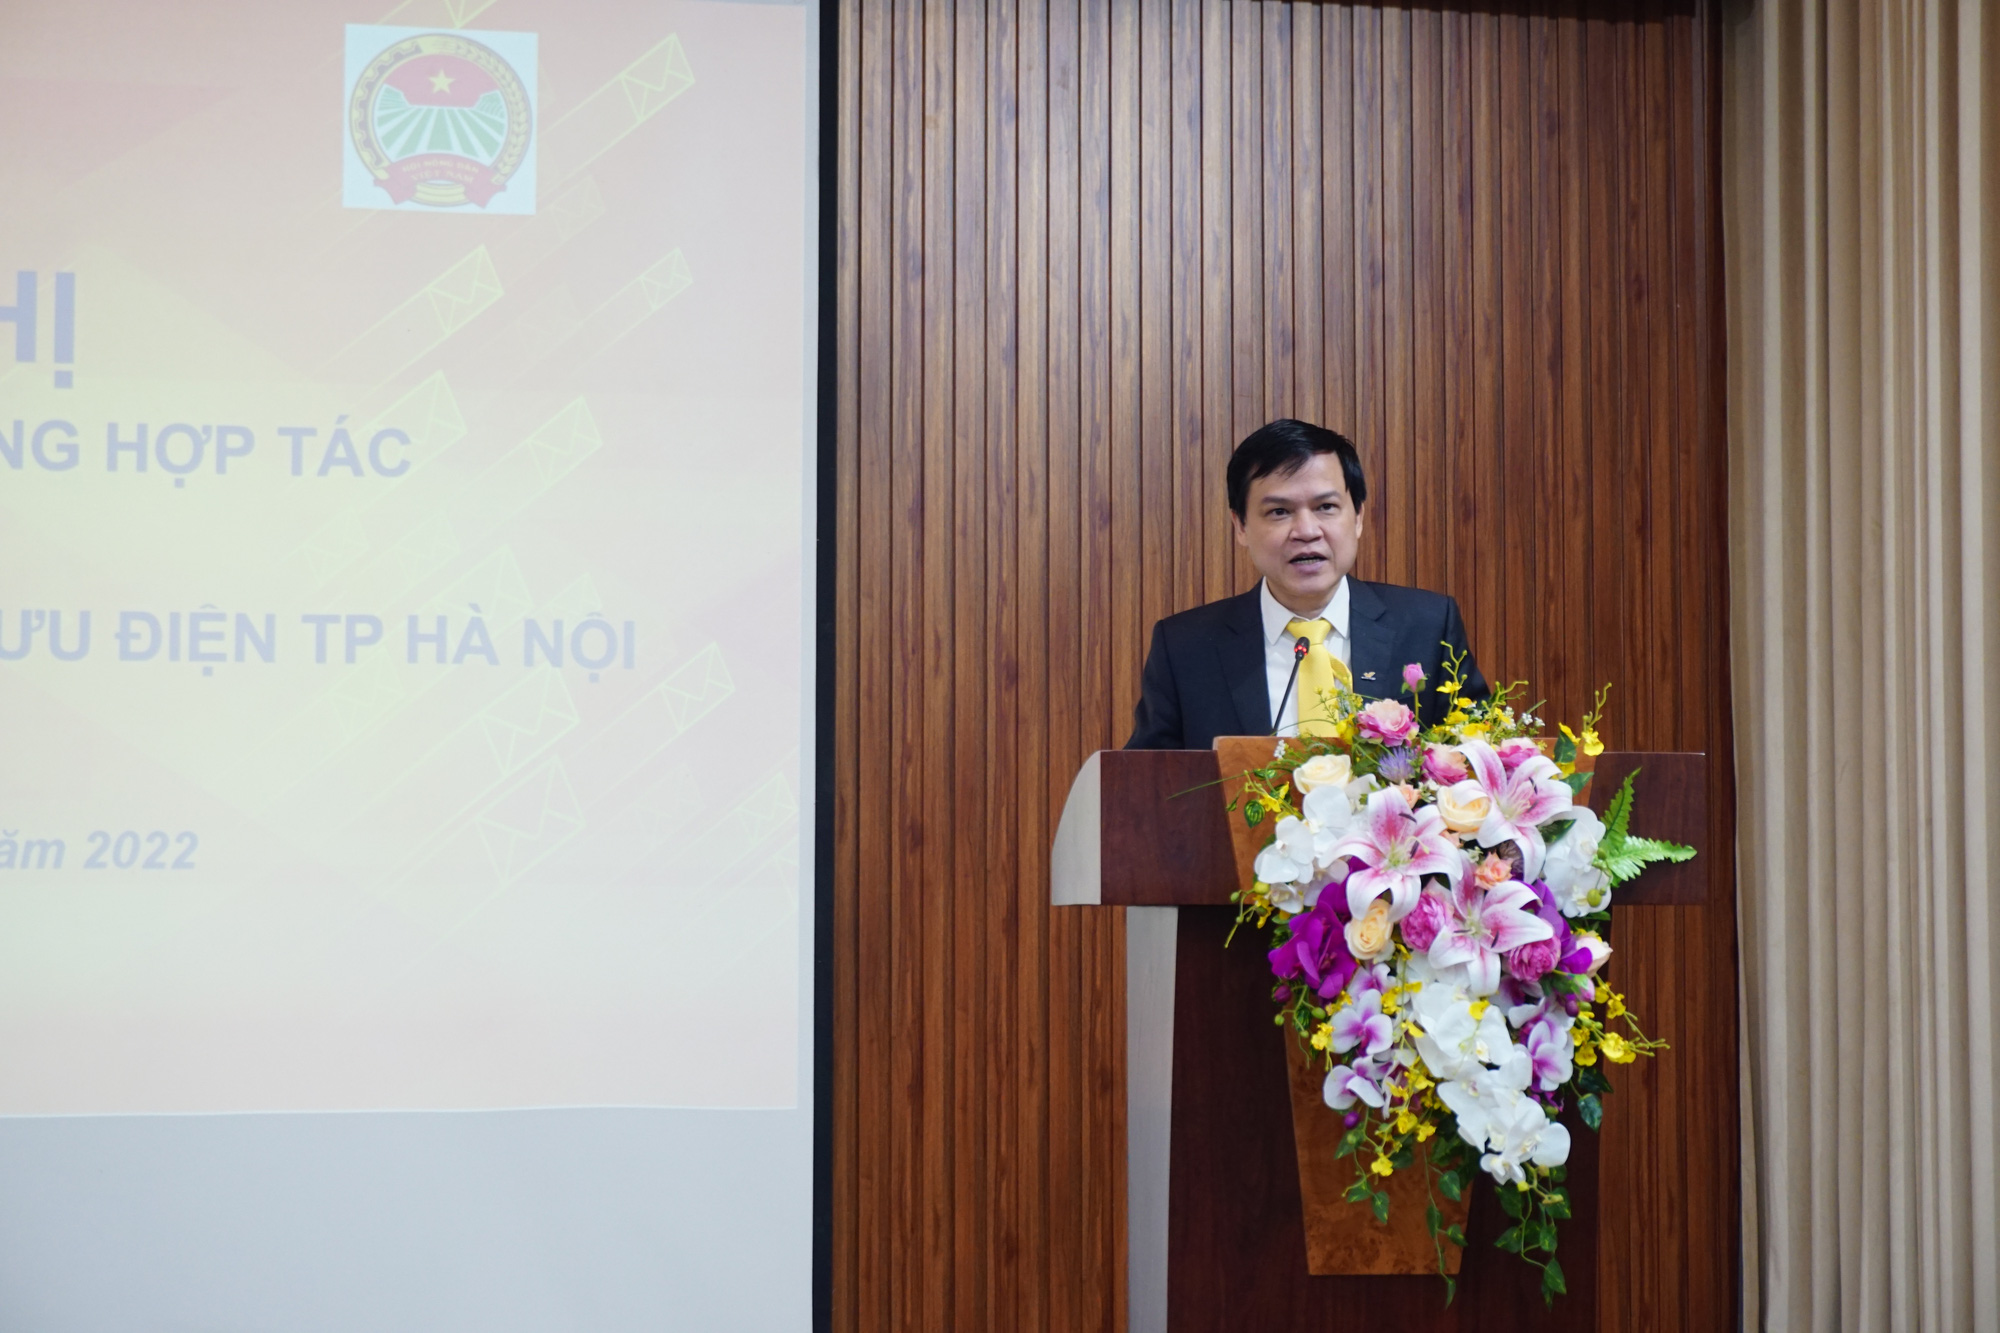 Hội Nông dân - Bưu điện Hà Nội: Hợp tác đưa nông sản Thủ đô lên sàn thương mại điện tử - Ảnh 4.